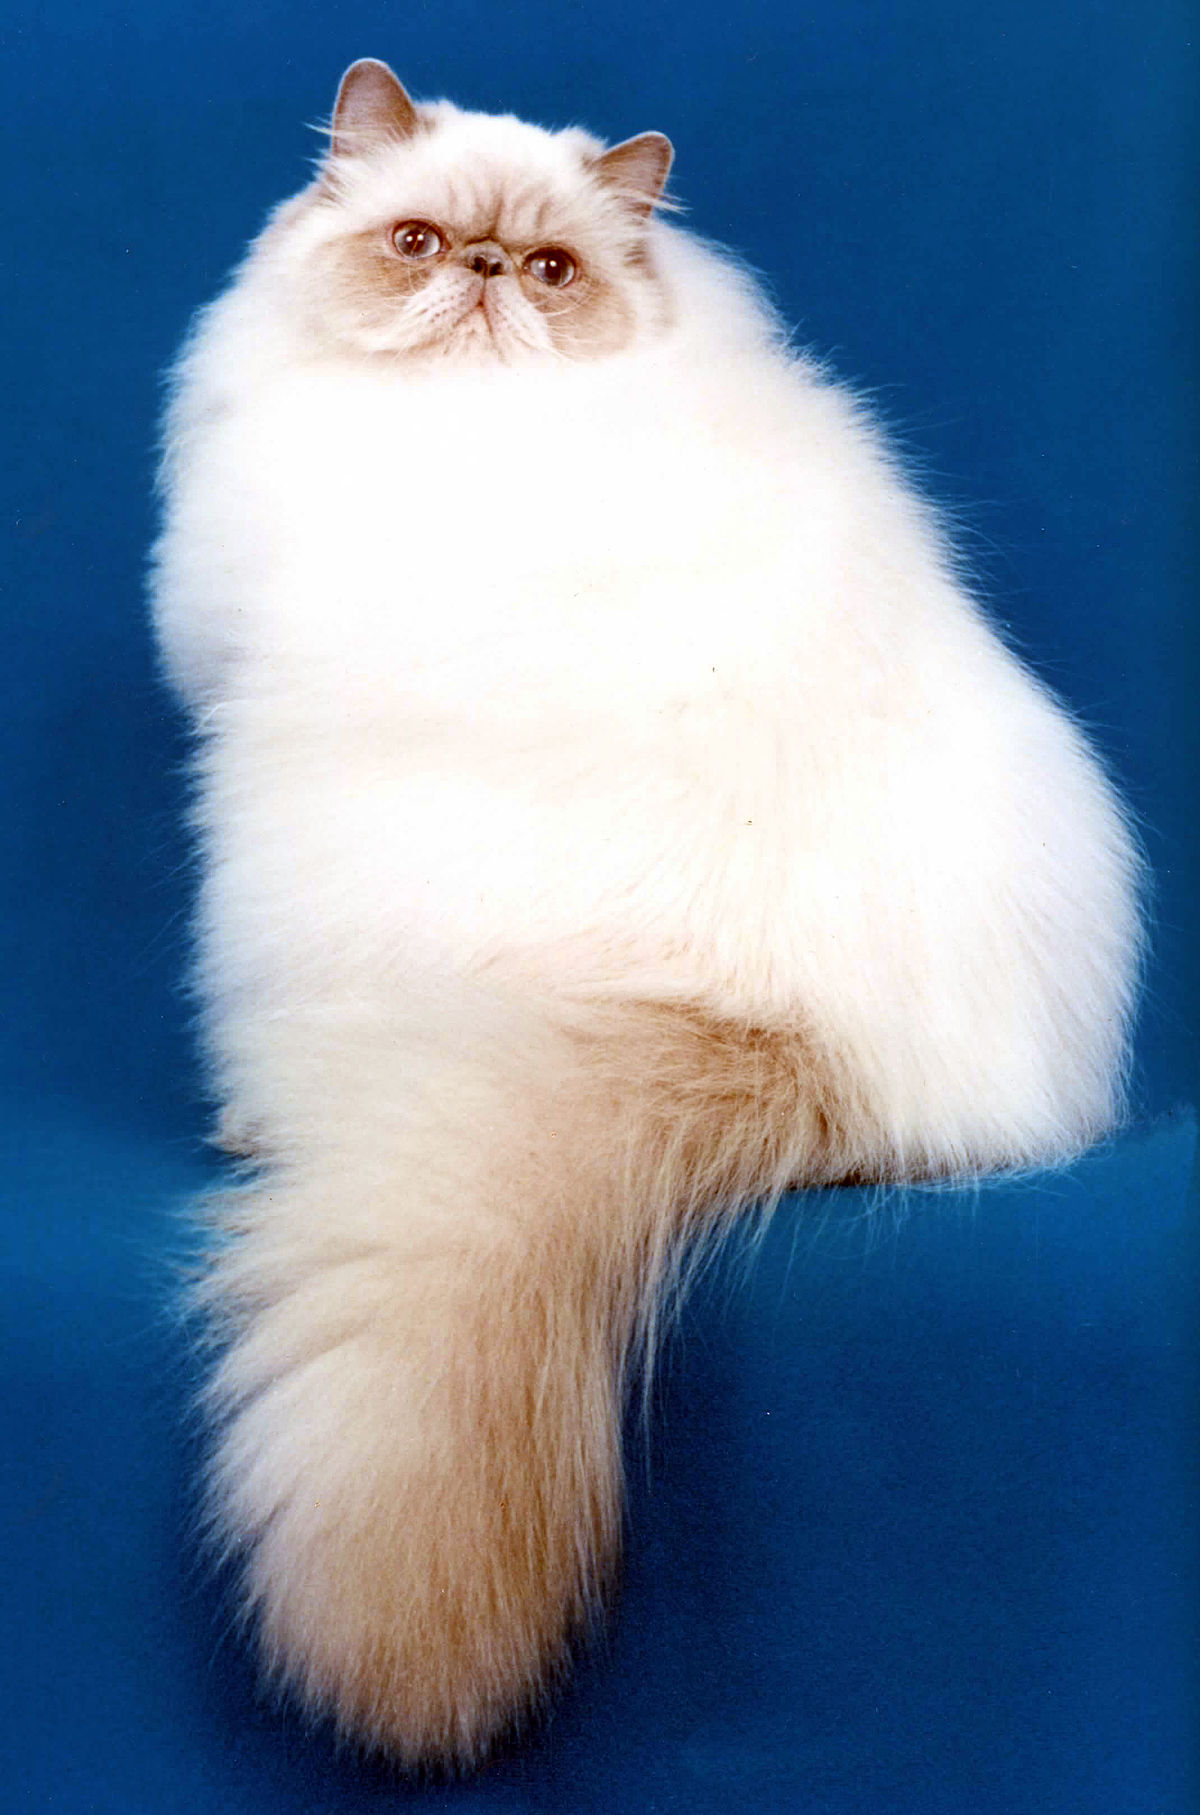 Гималайская кошка — характер котов и котят